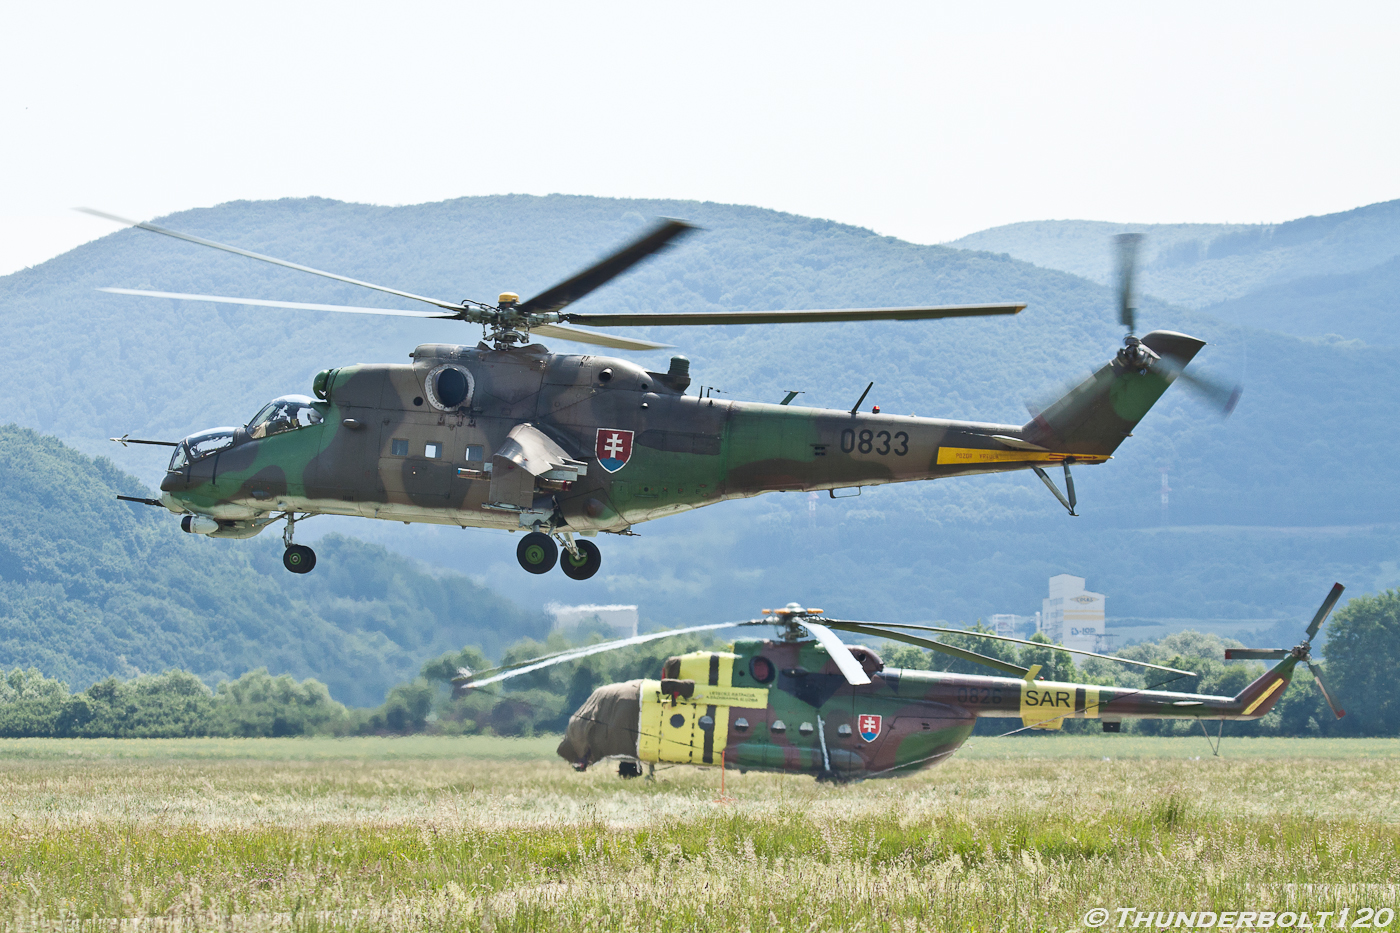 Mi-24V Hind 0833
